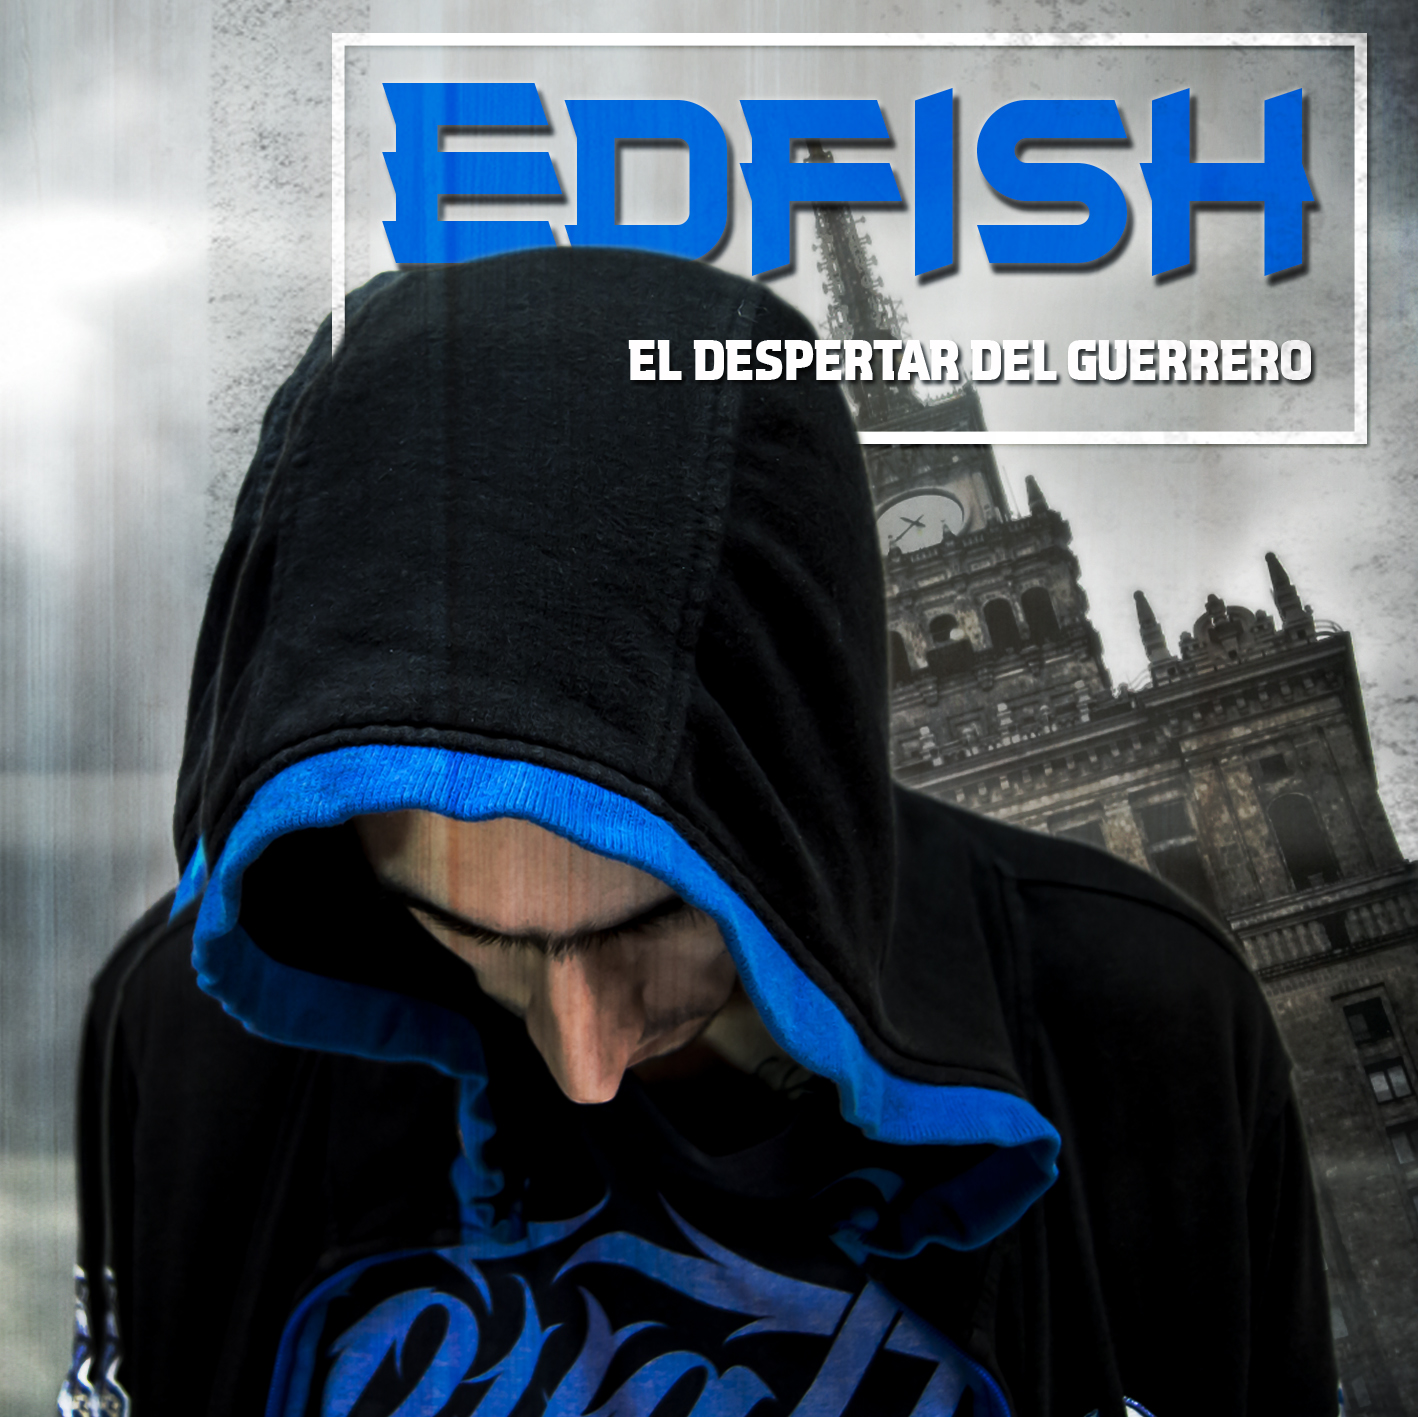 Edfish